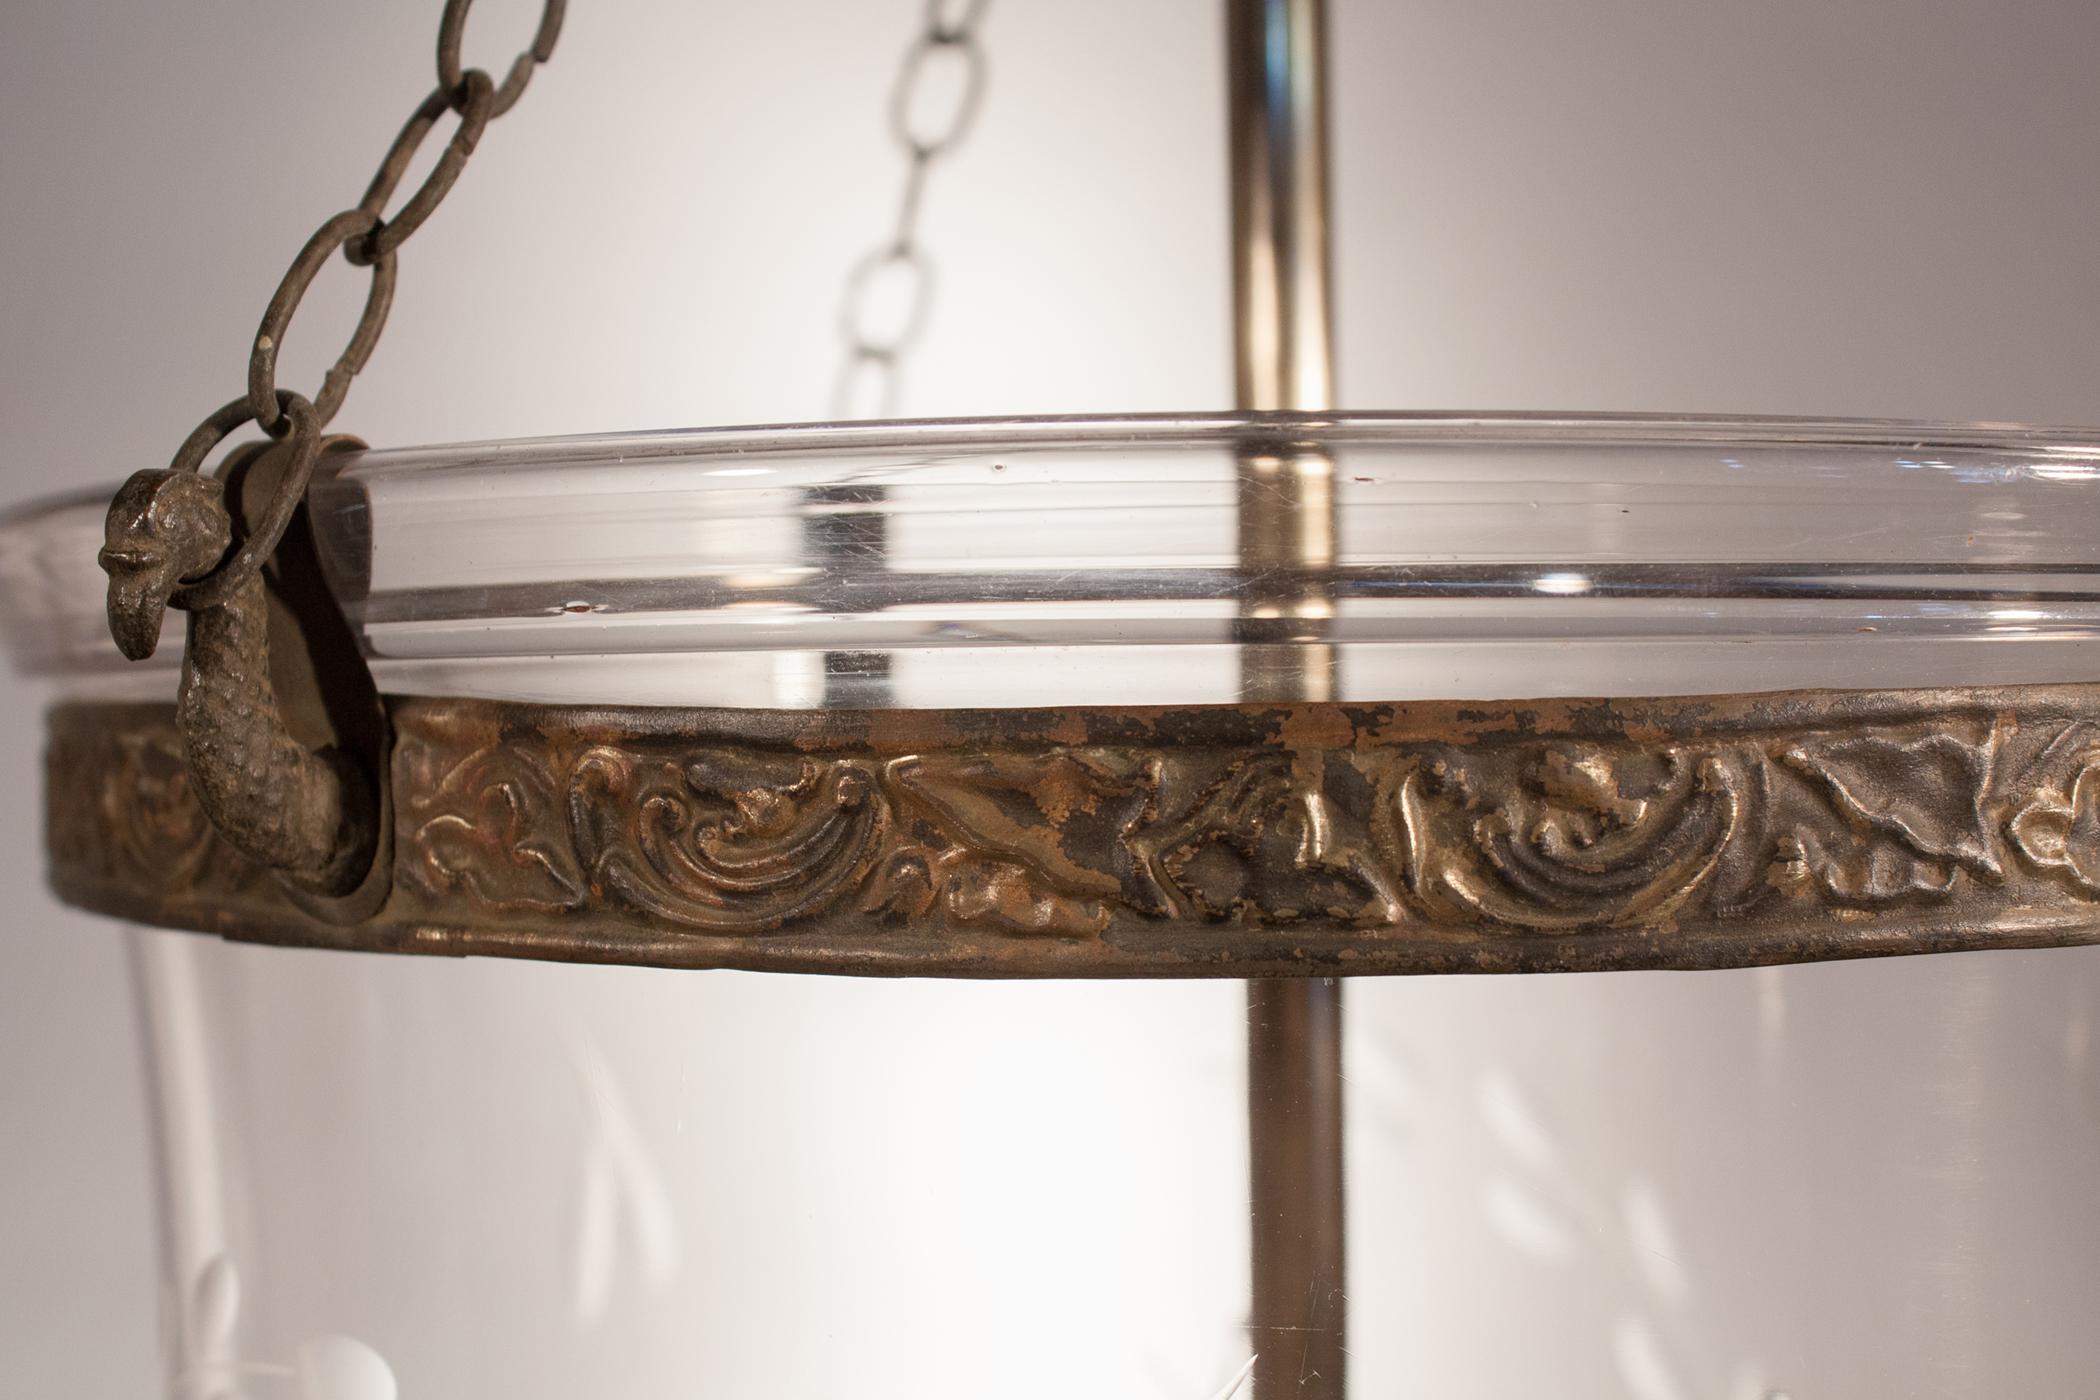  Antique Bell Jar Lantern with Vine Etching (Radiert)